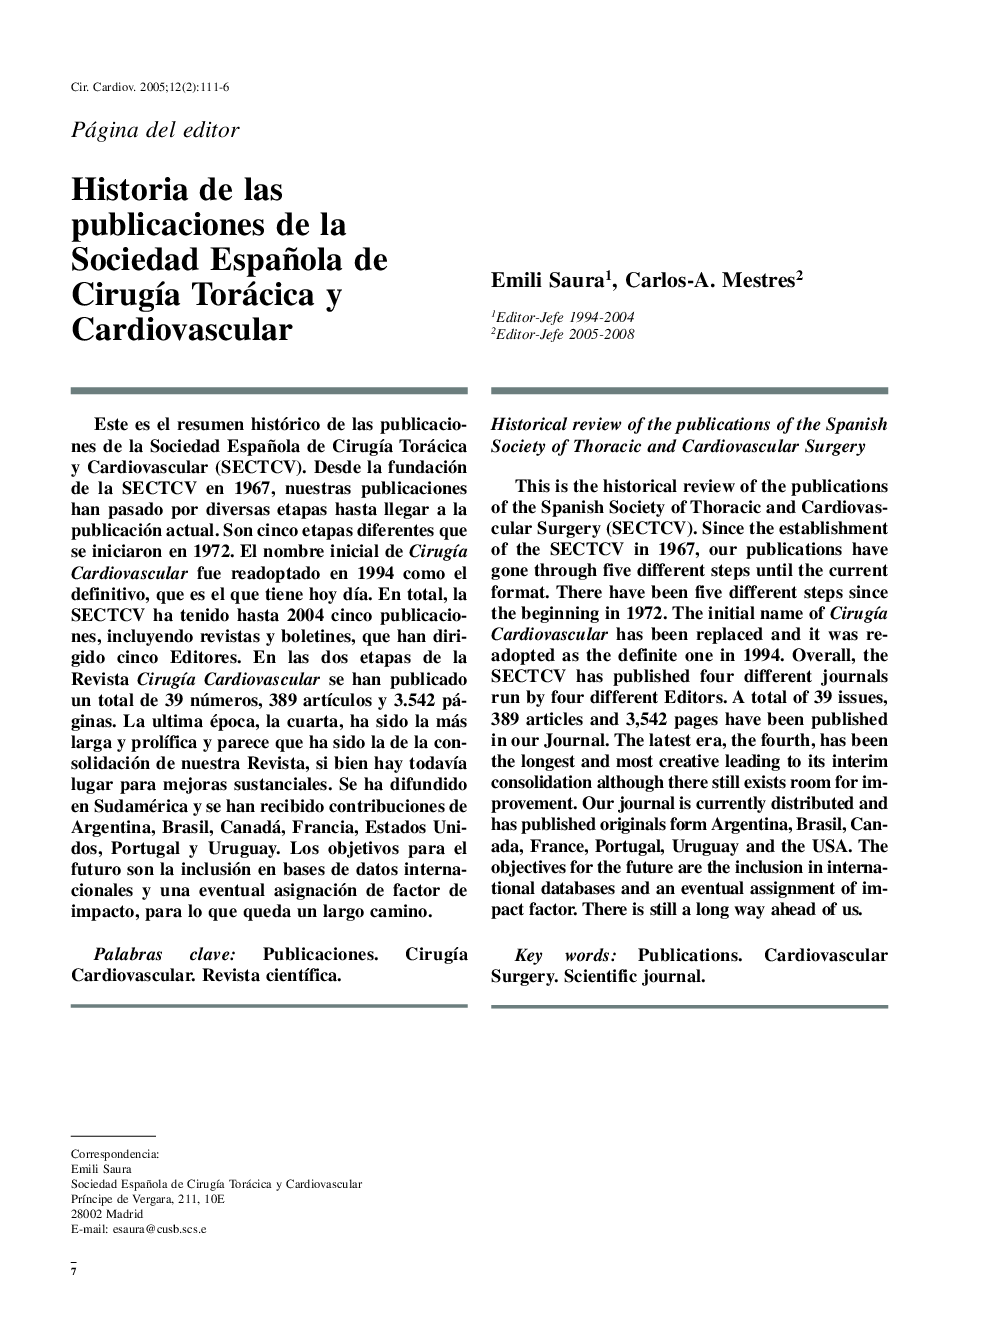 Historia de las publicaciones de la Sociedad Española de CirugÃ­a Torácica y Cardiovascular